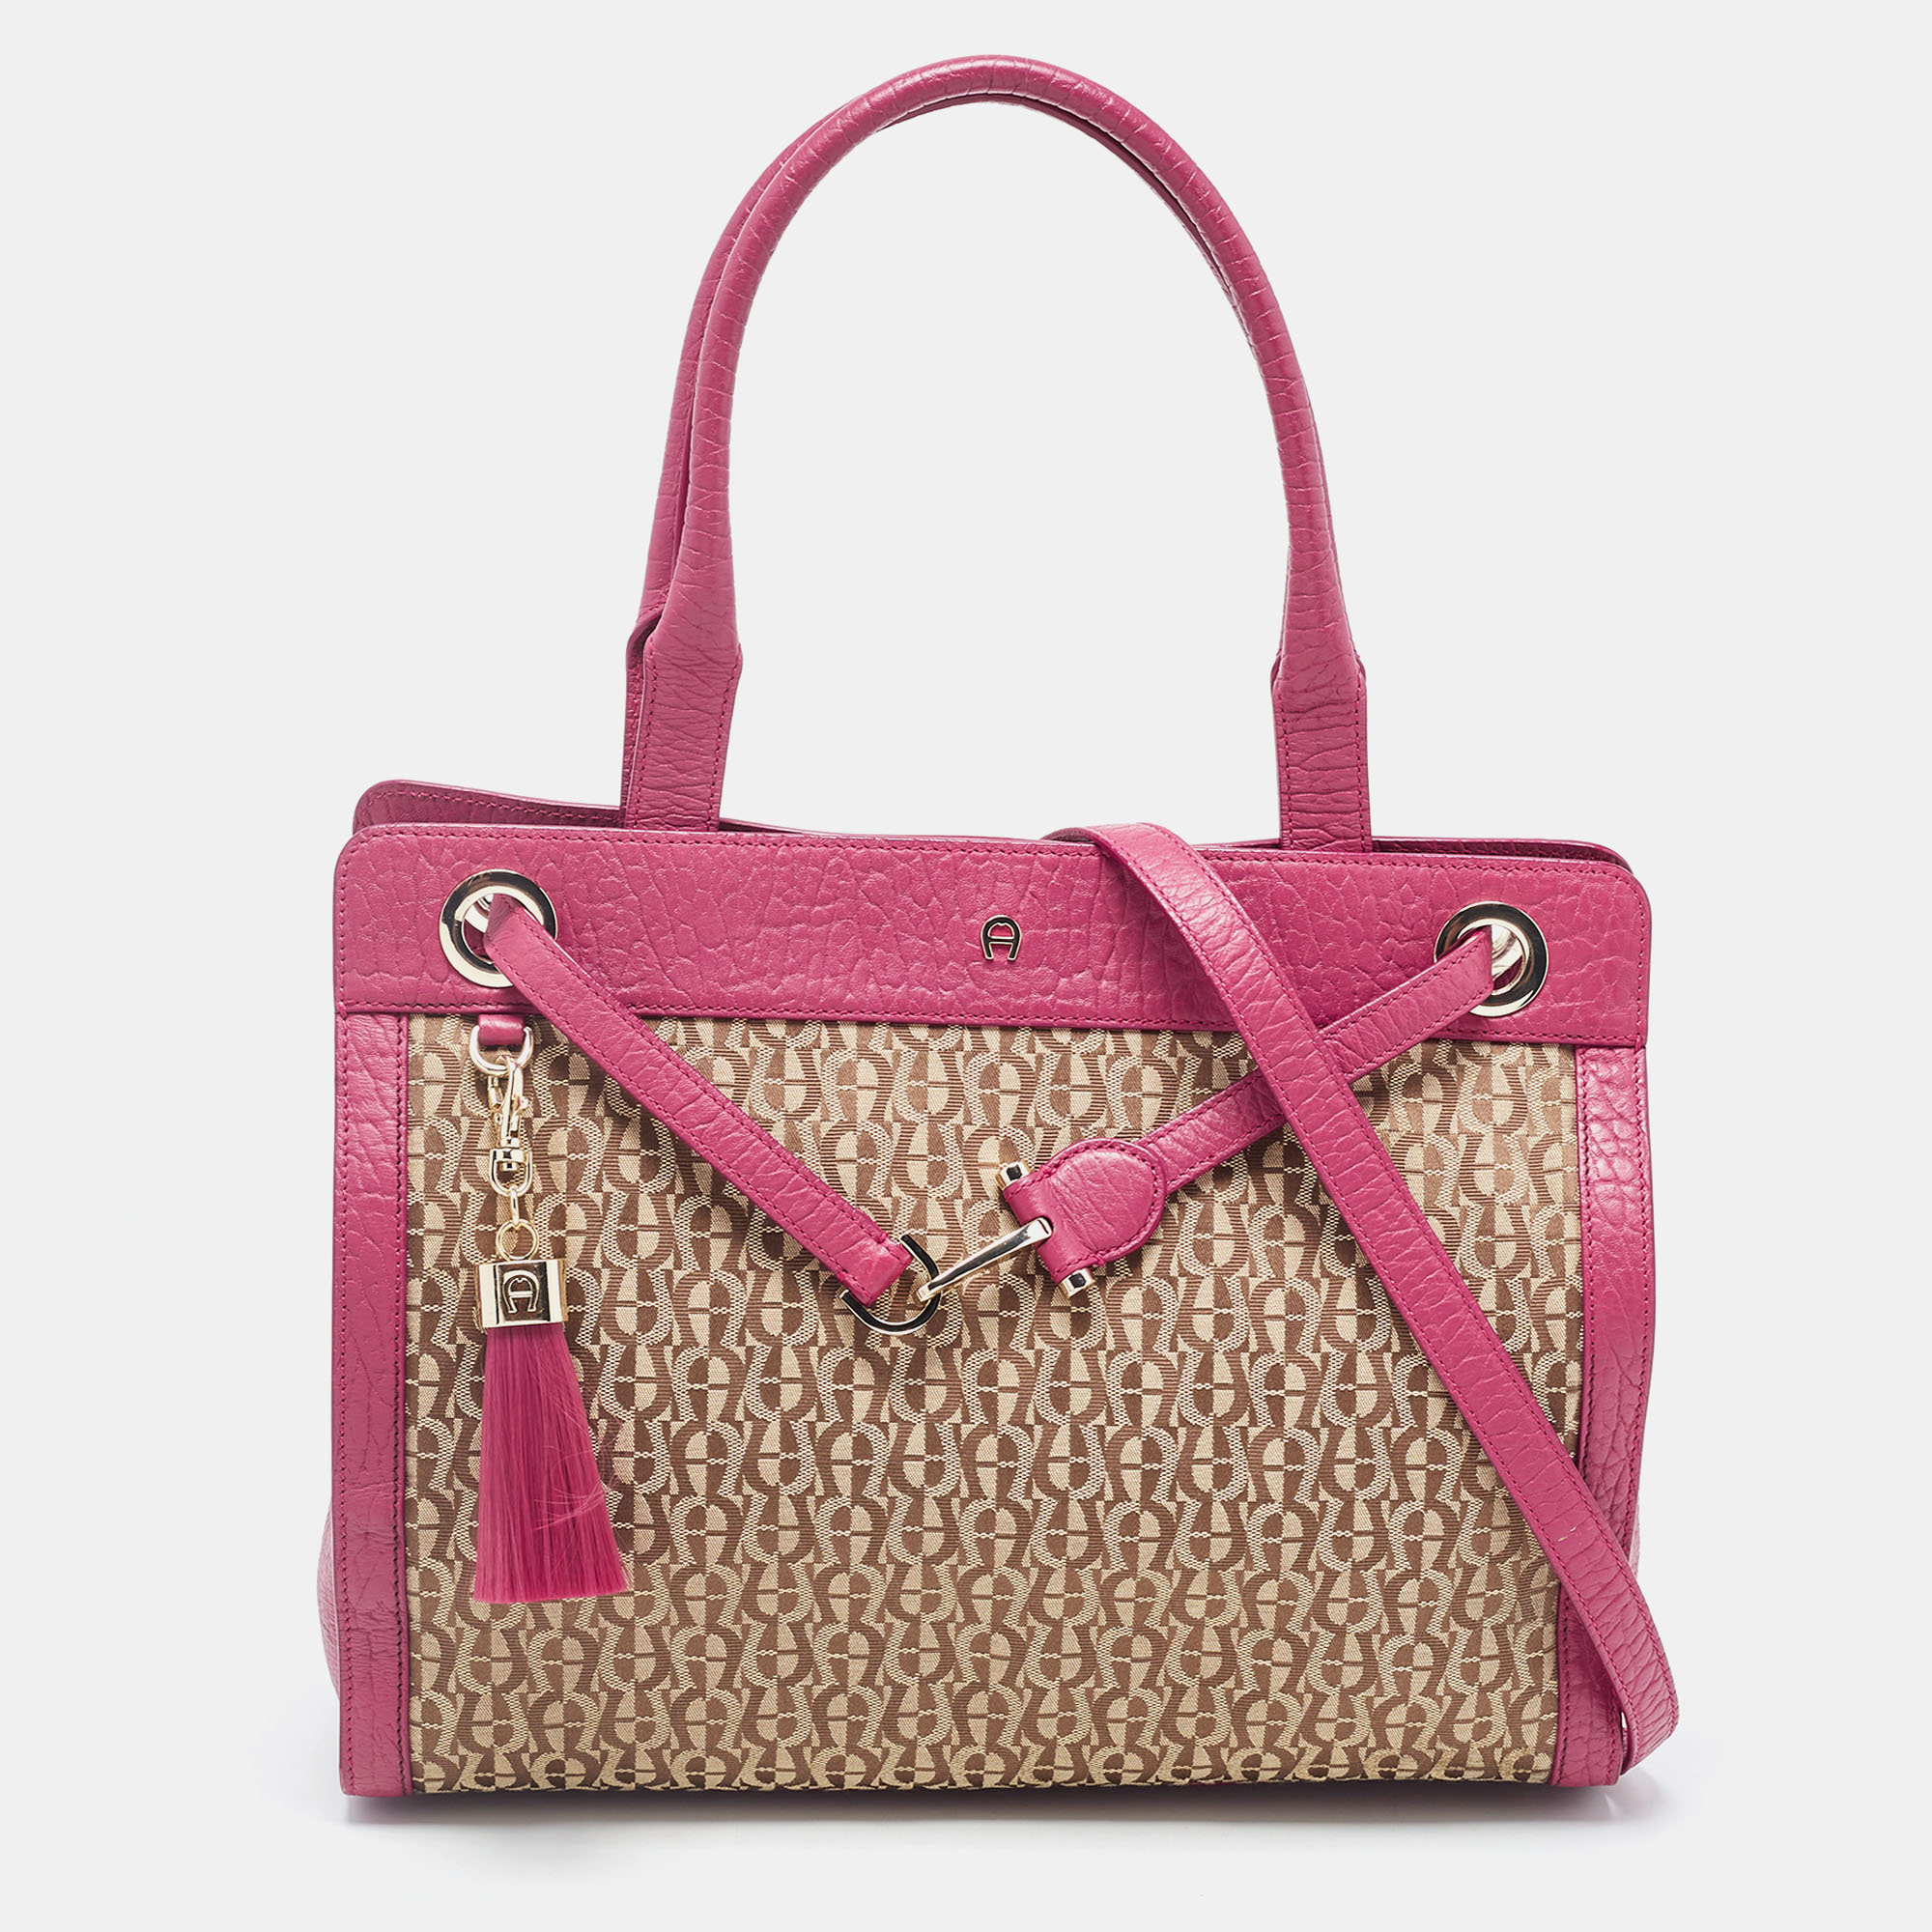 Barbara Mini Bag S cognac brown - Bags - Women - Aigner